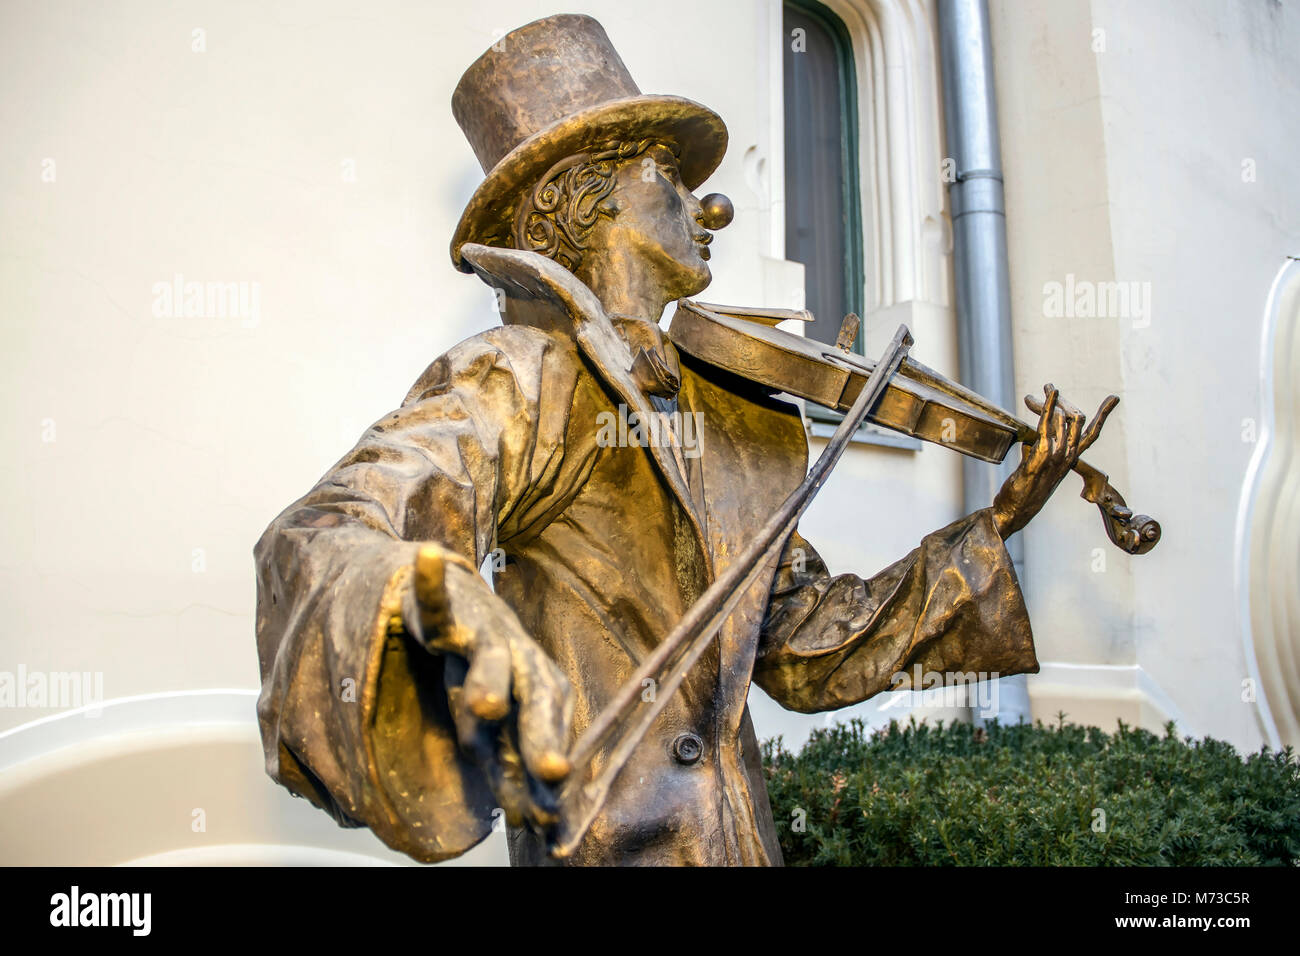 Subotica, en Voïvodine, Serbie - sculpture en bronze d'un homme au violon Banque D'Images